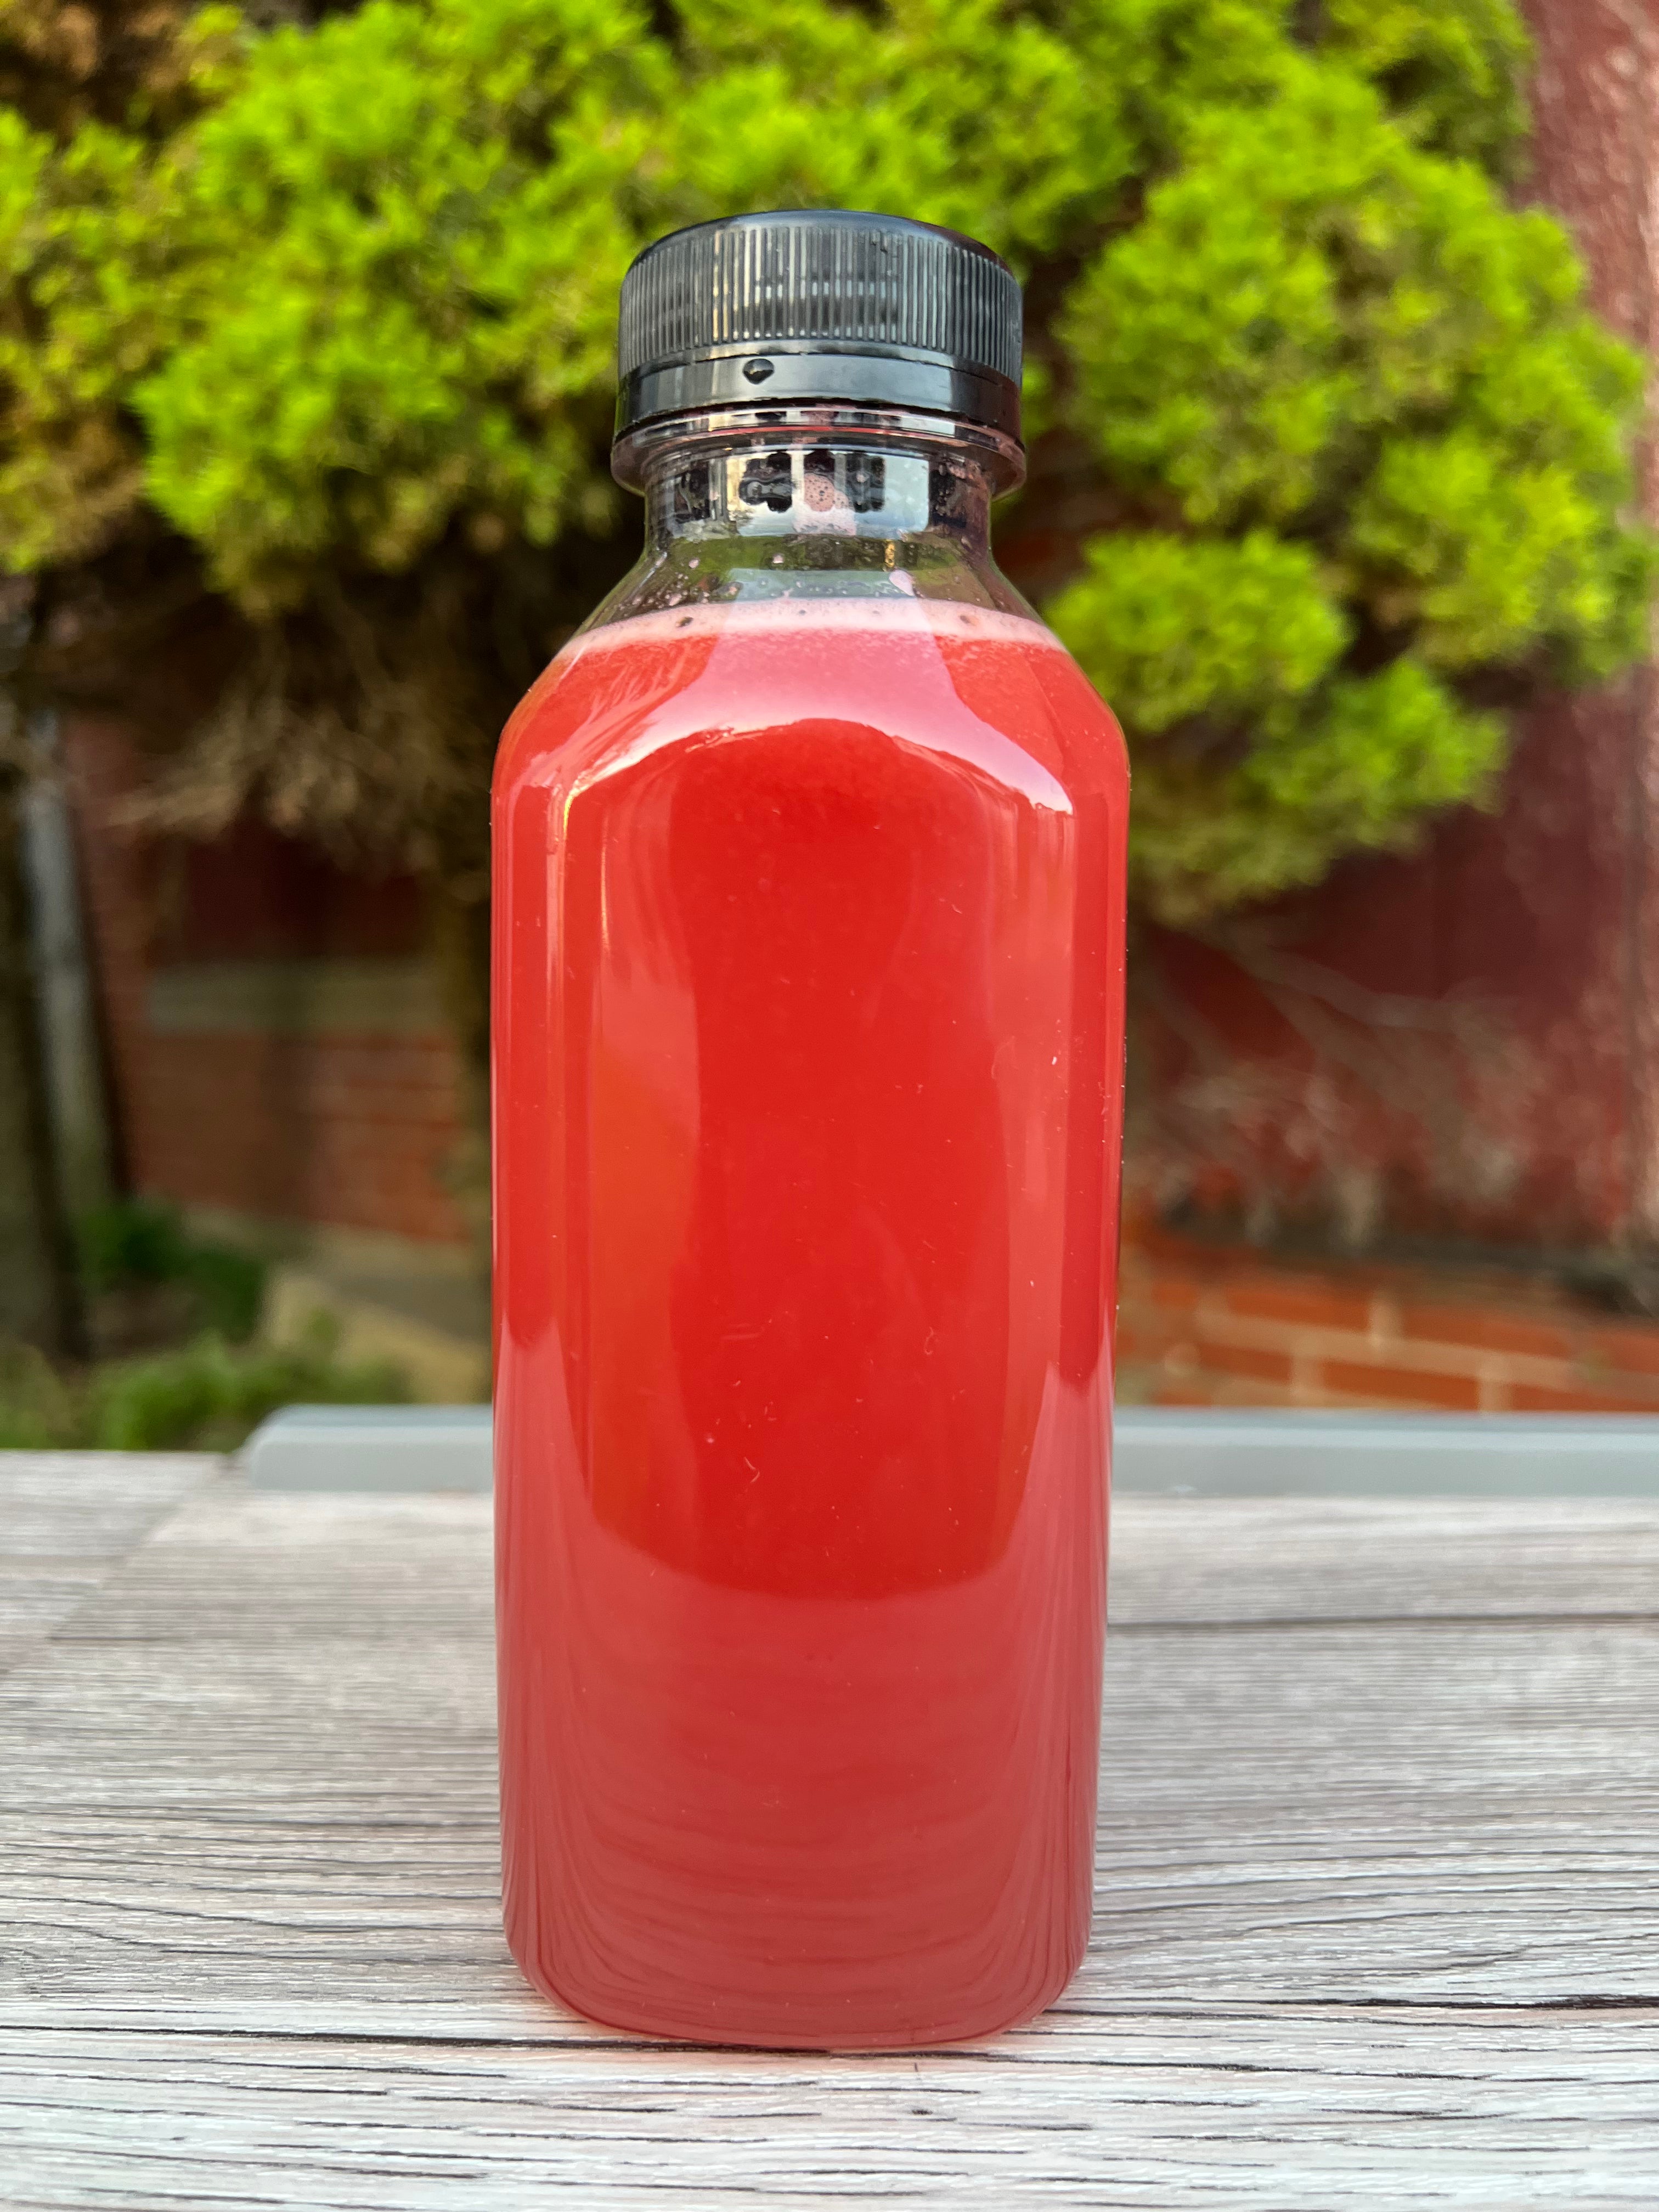 Strawberry & Watermelon detox drink - Raw fruit juice -16 oz